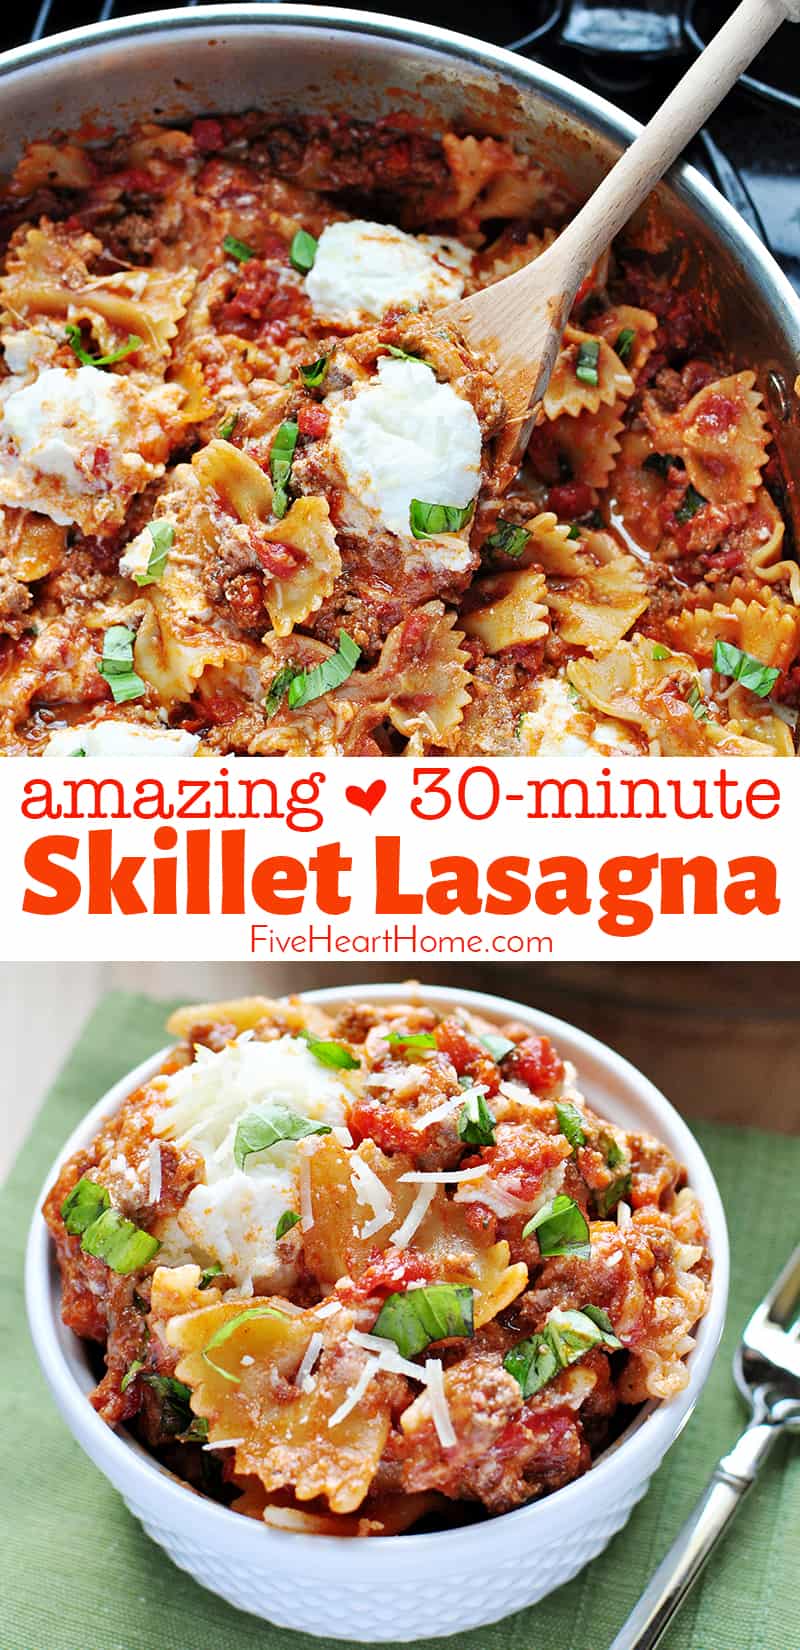 SCRUMPTIOUS 30-Minute Skillet Lasagna